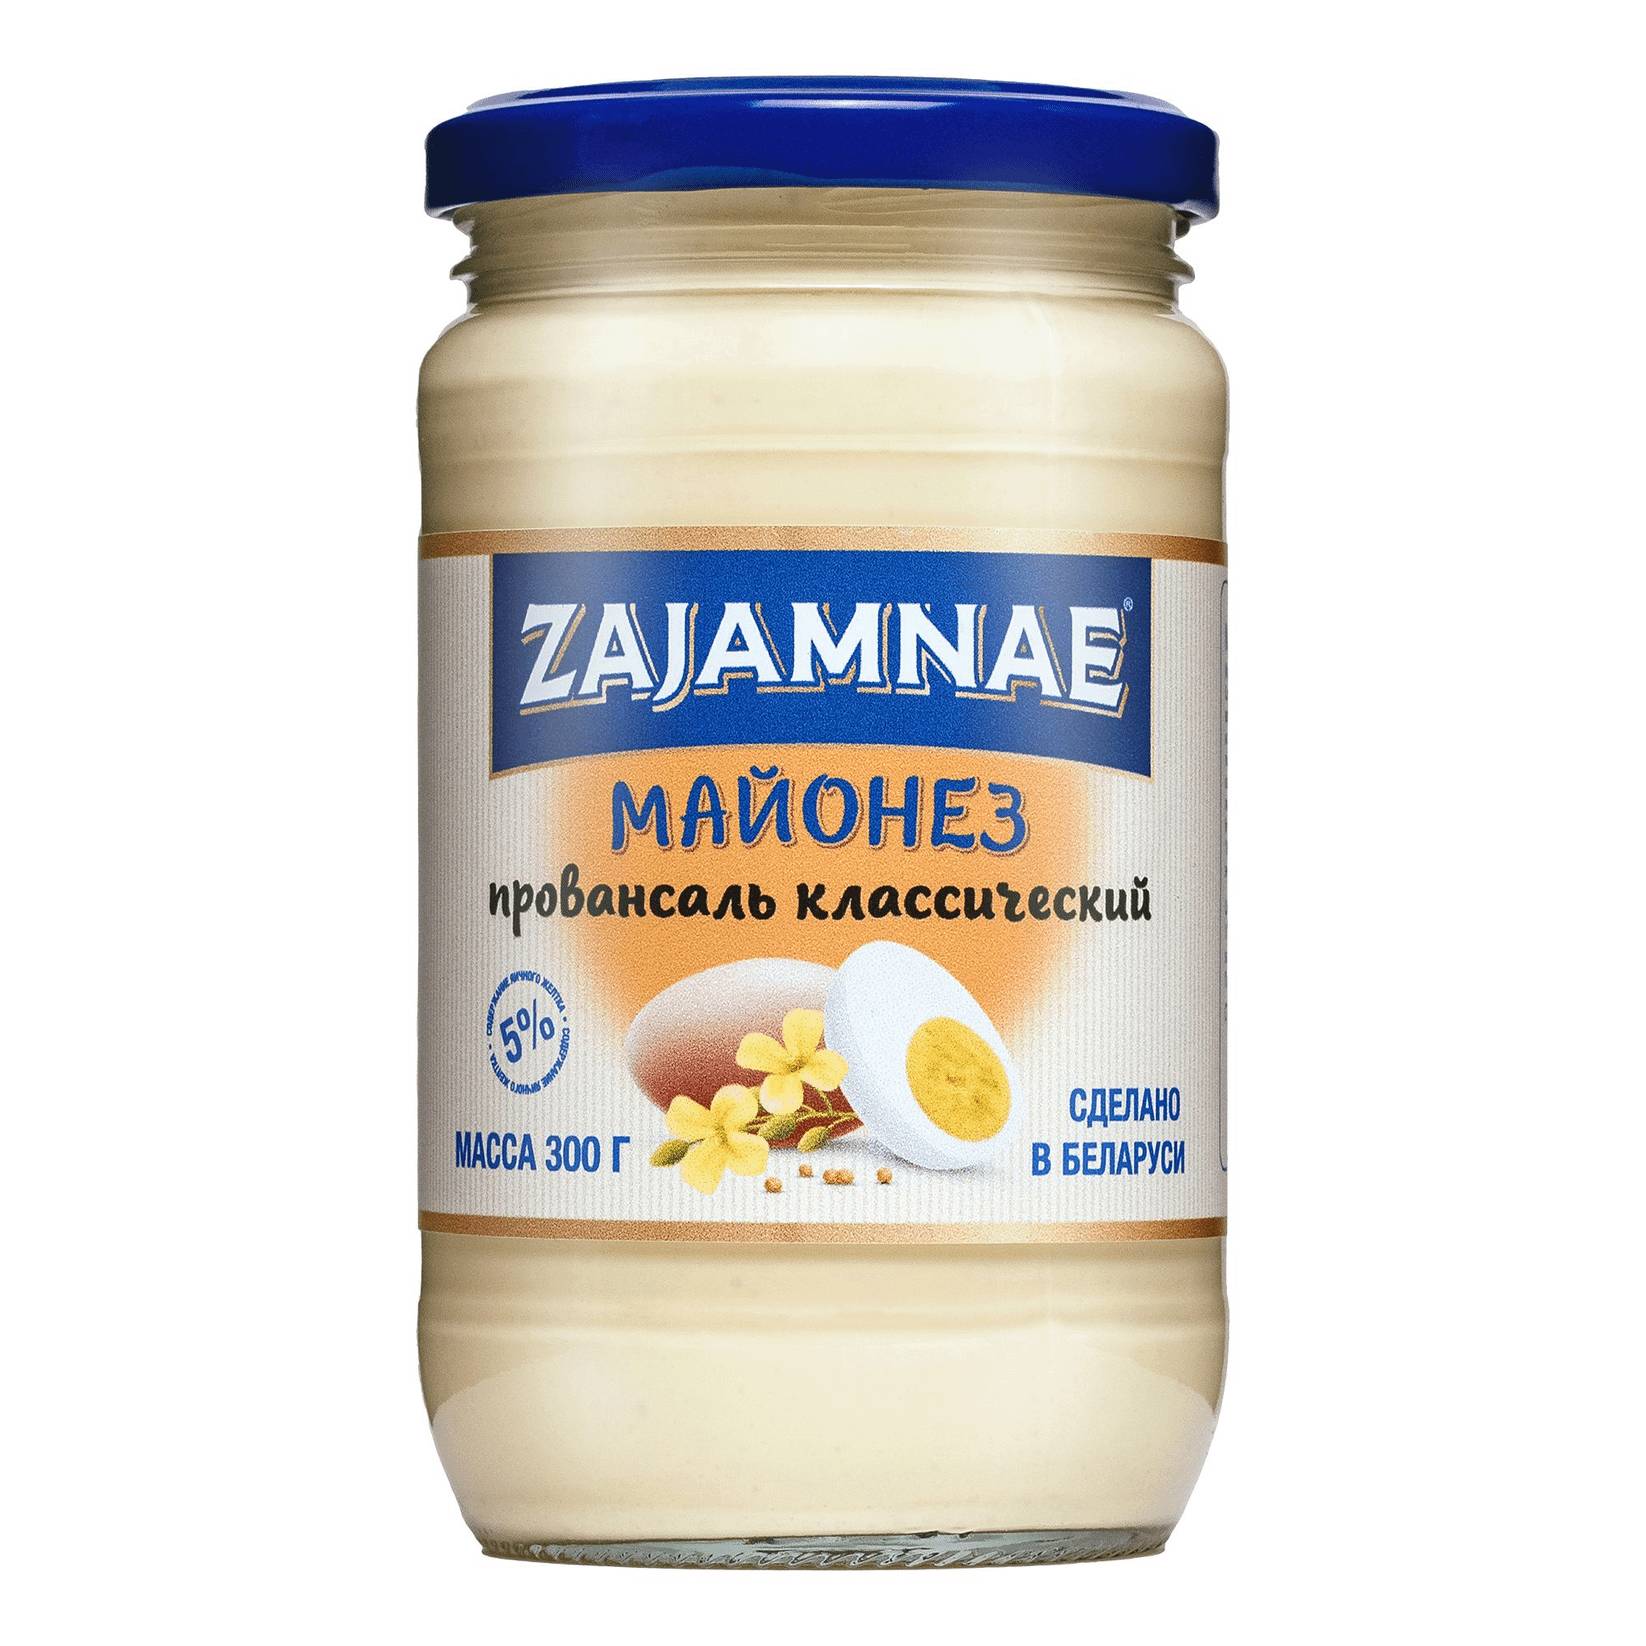 Майонез Zajamnae провансаль классический, 300 г майонез calve на перепелином яйце 67% 200 гр